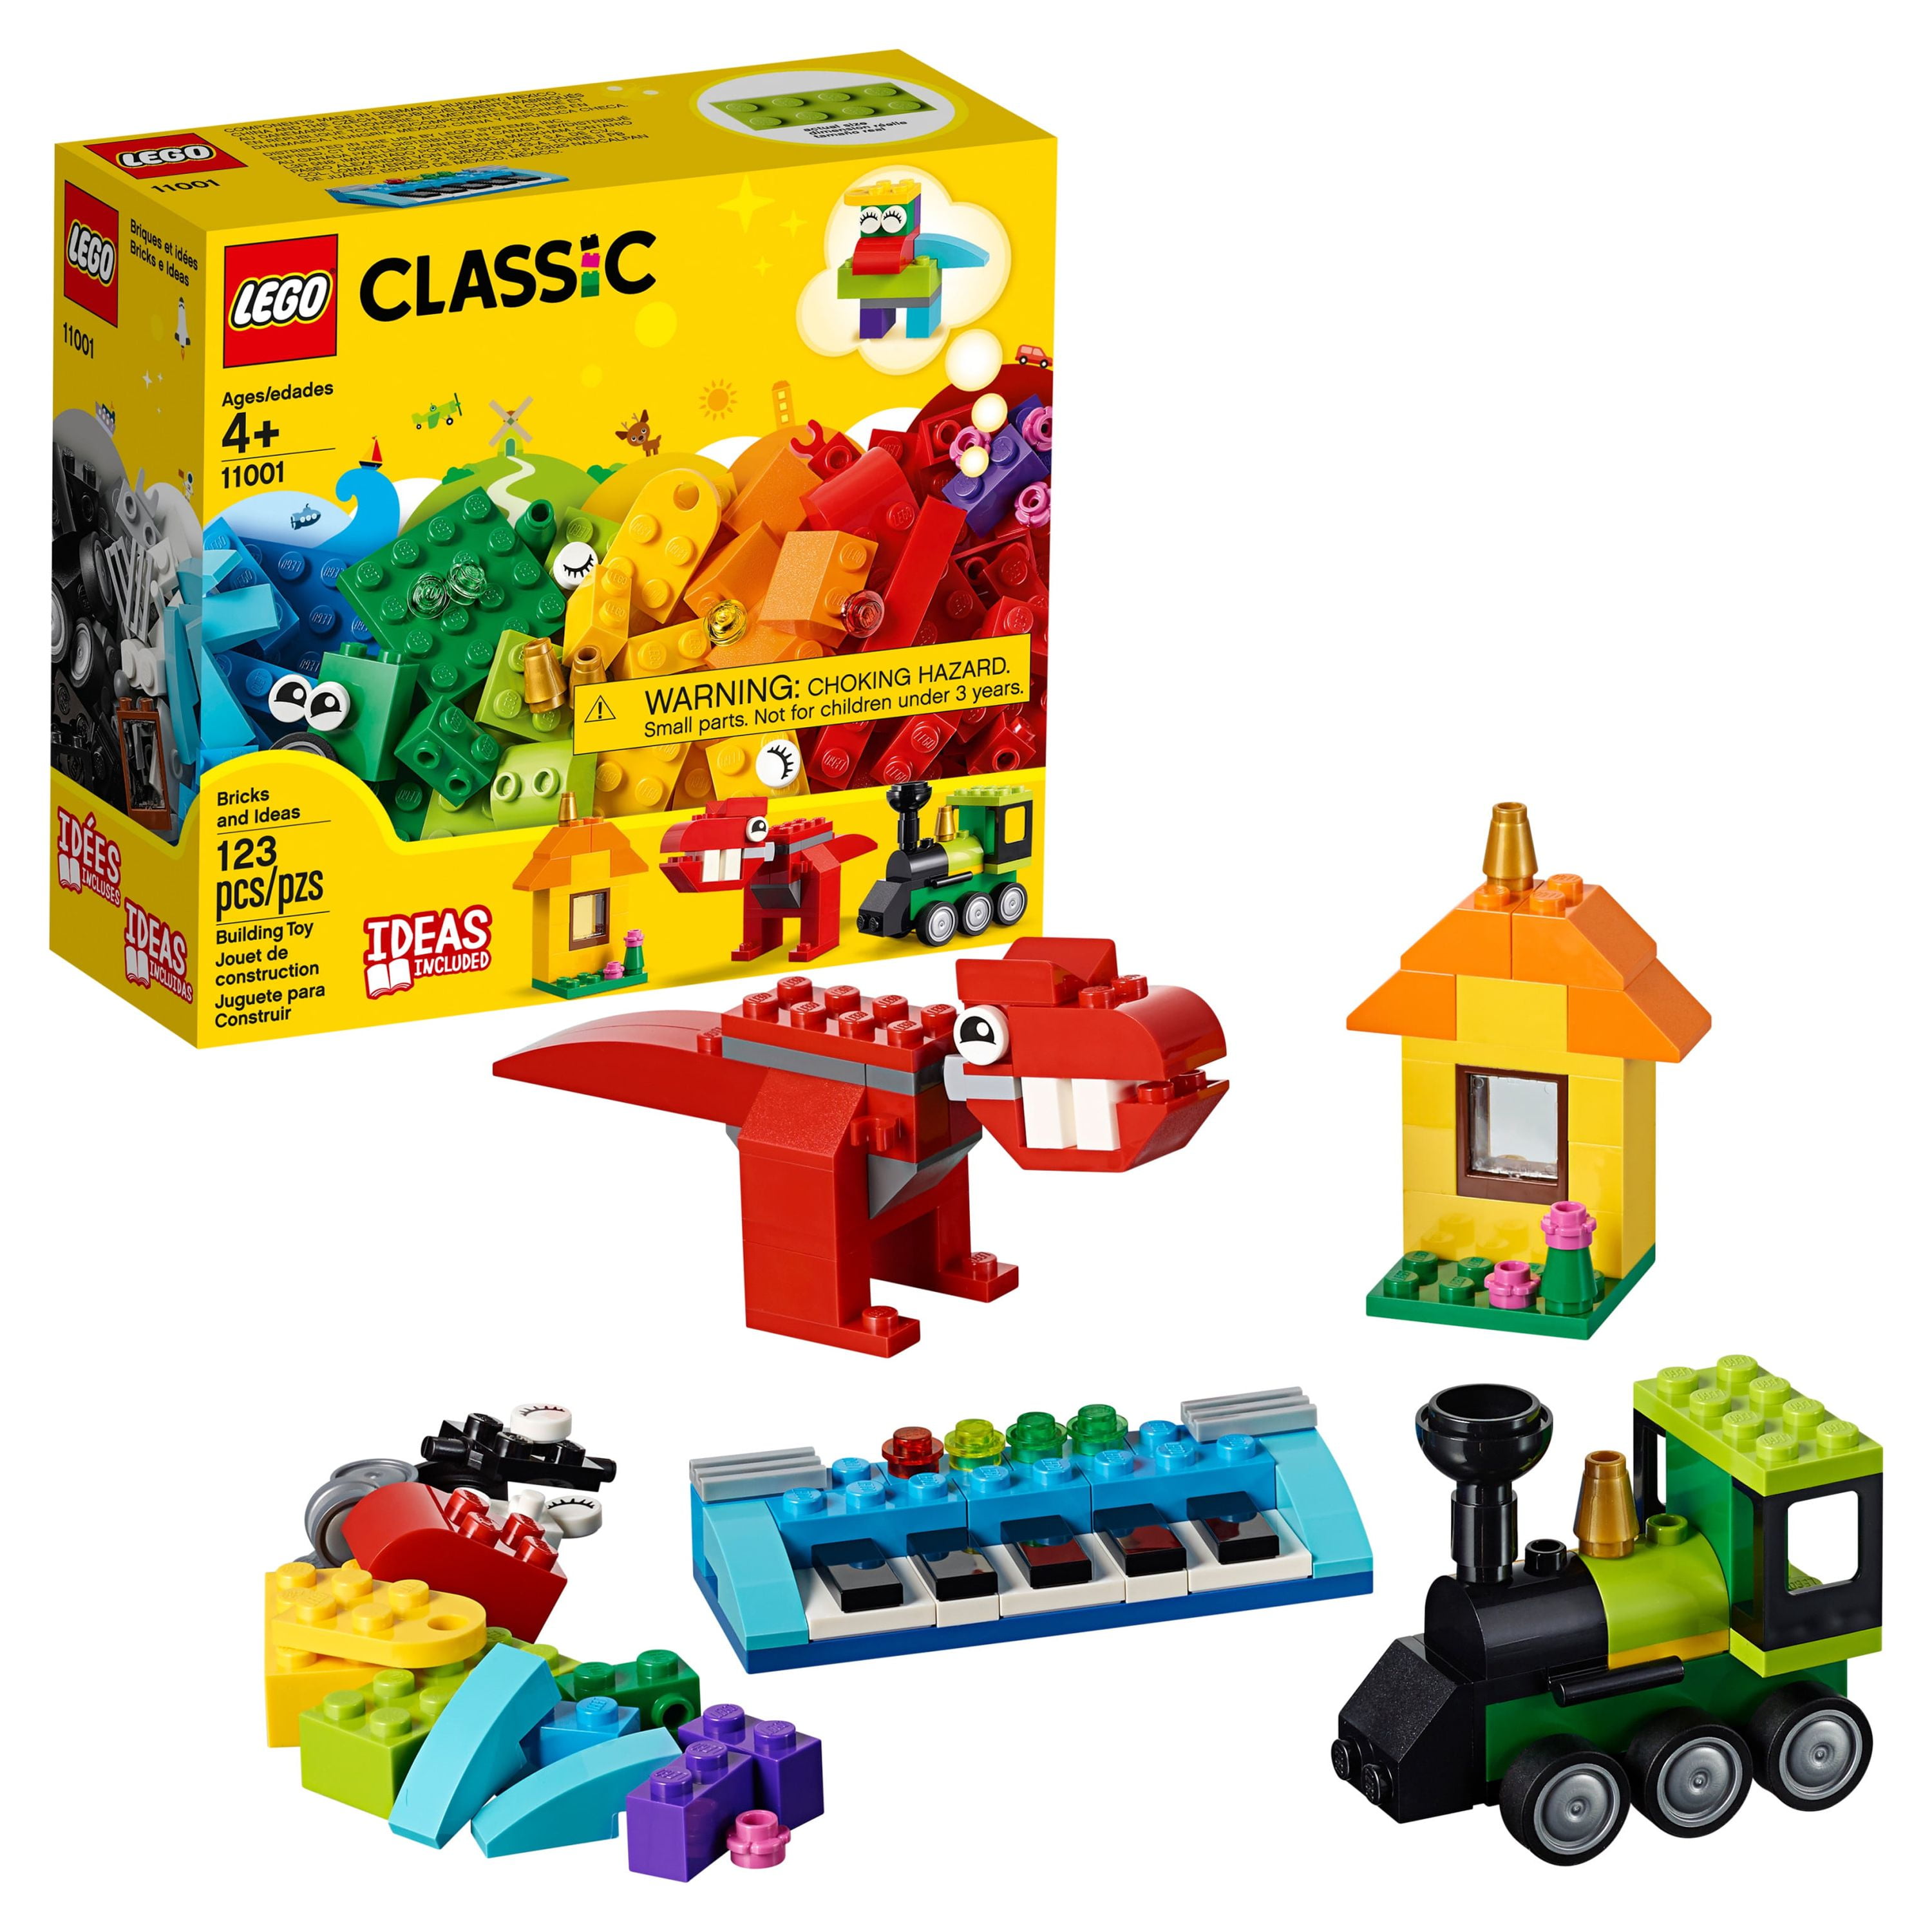 Briques Lego Education : pack de 1000 pièces